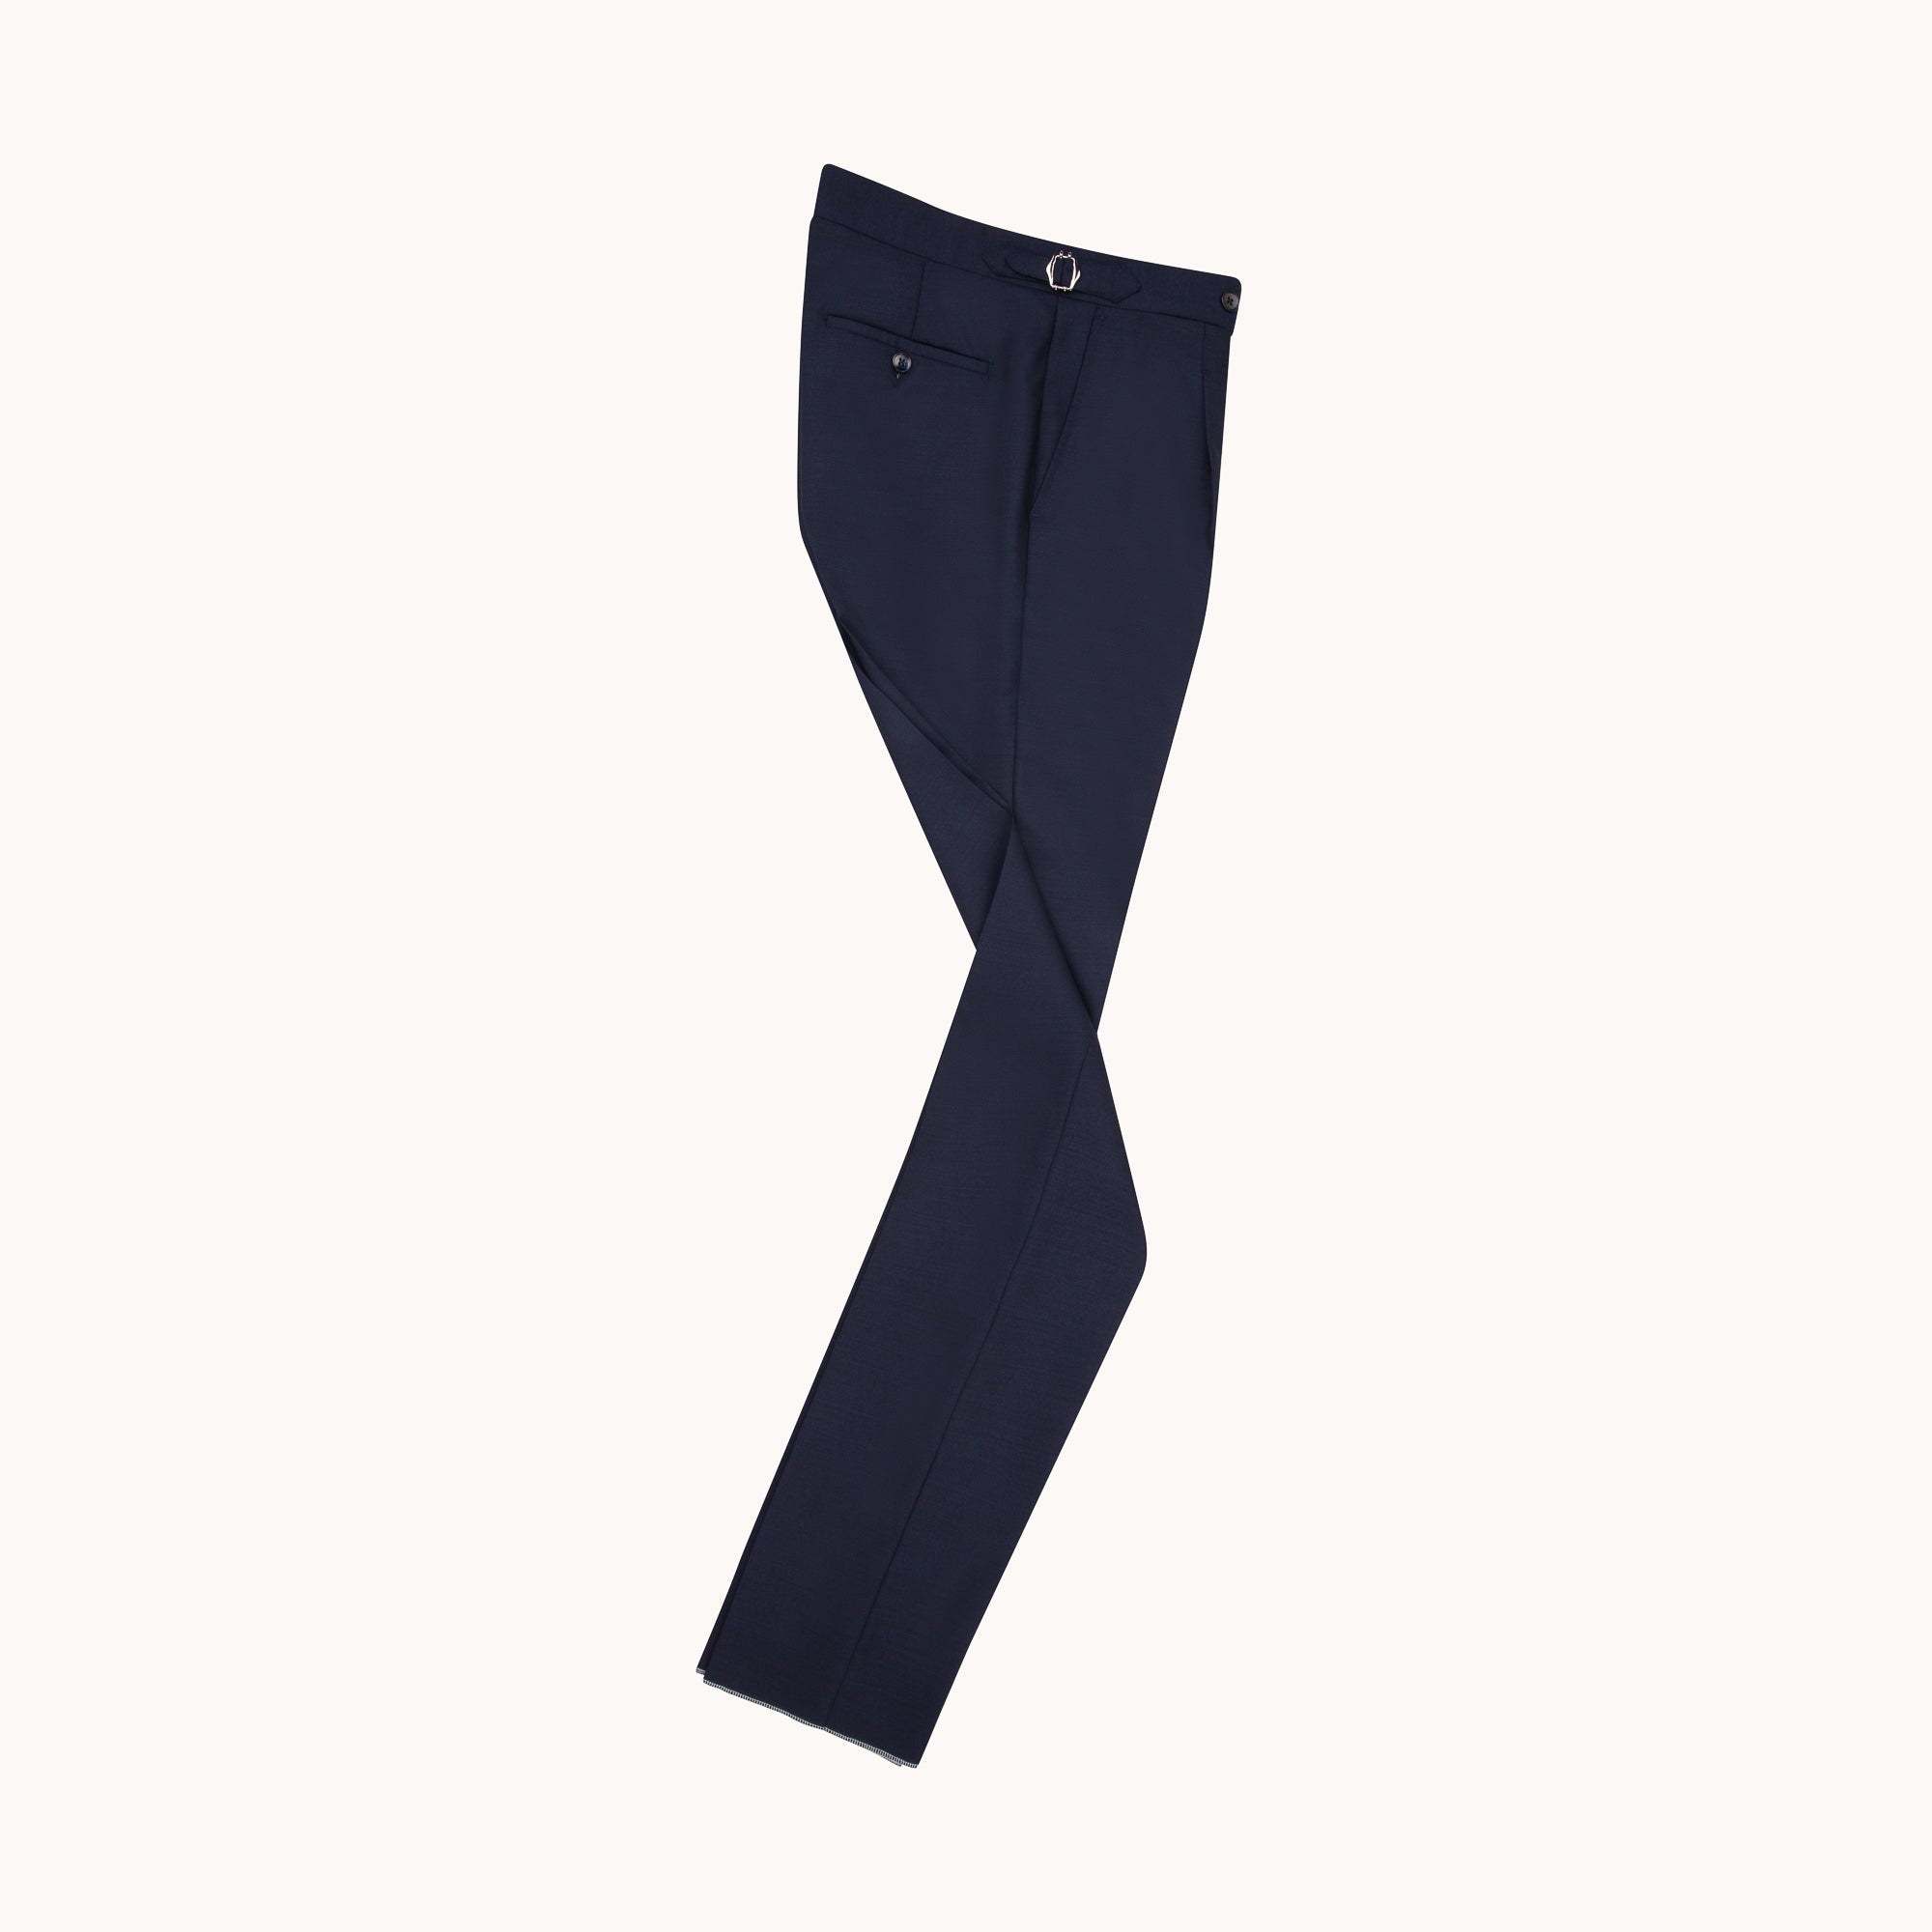 Single Pleat Trouser - Navy High Twist Wool